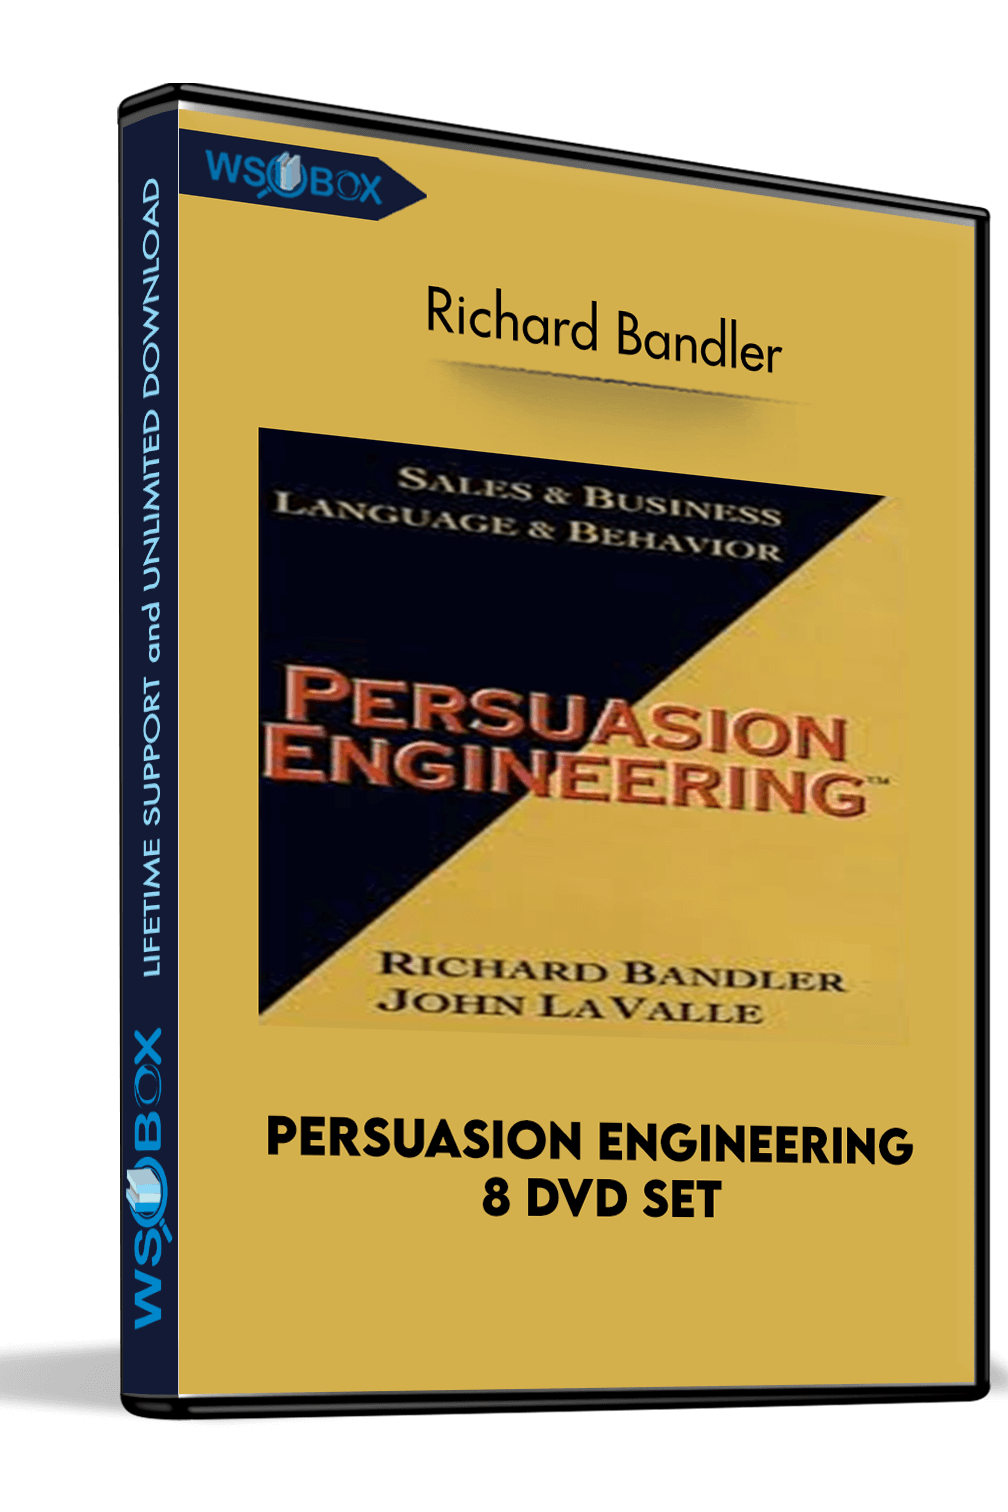 persuasion-engineering-8-dvd-set-richard-bandler